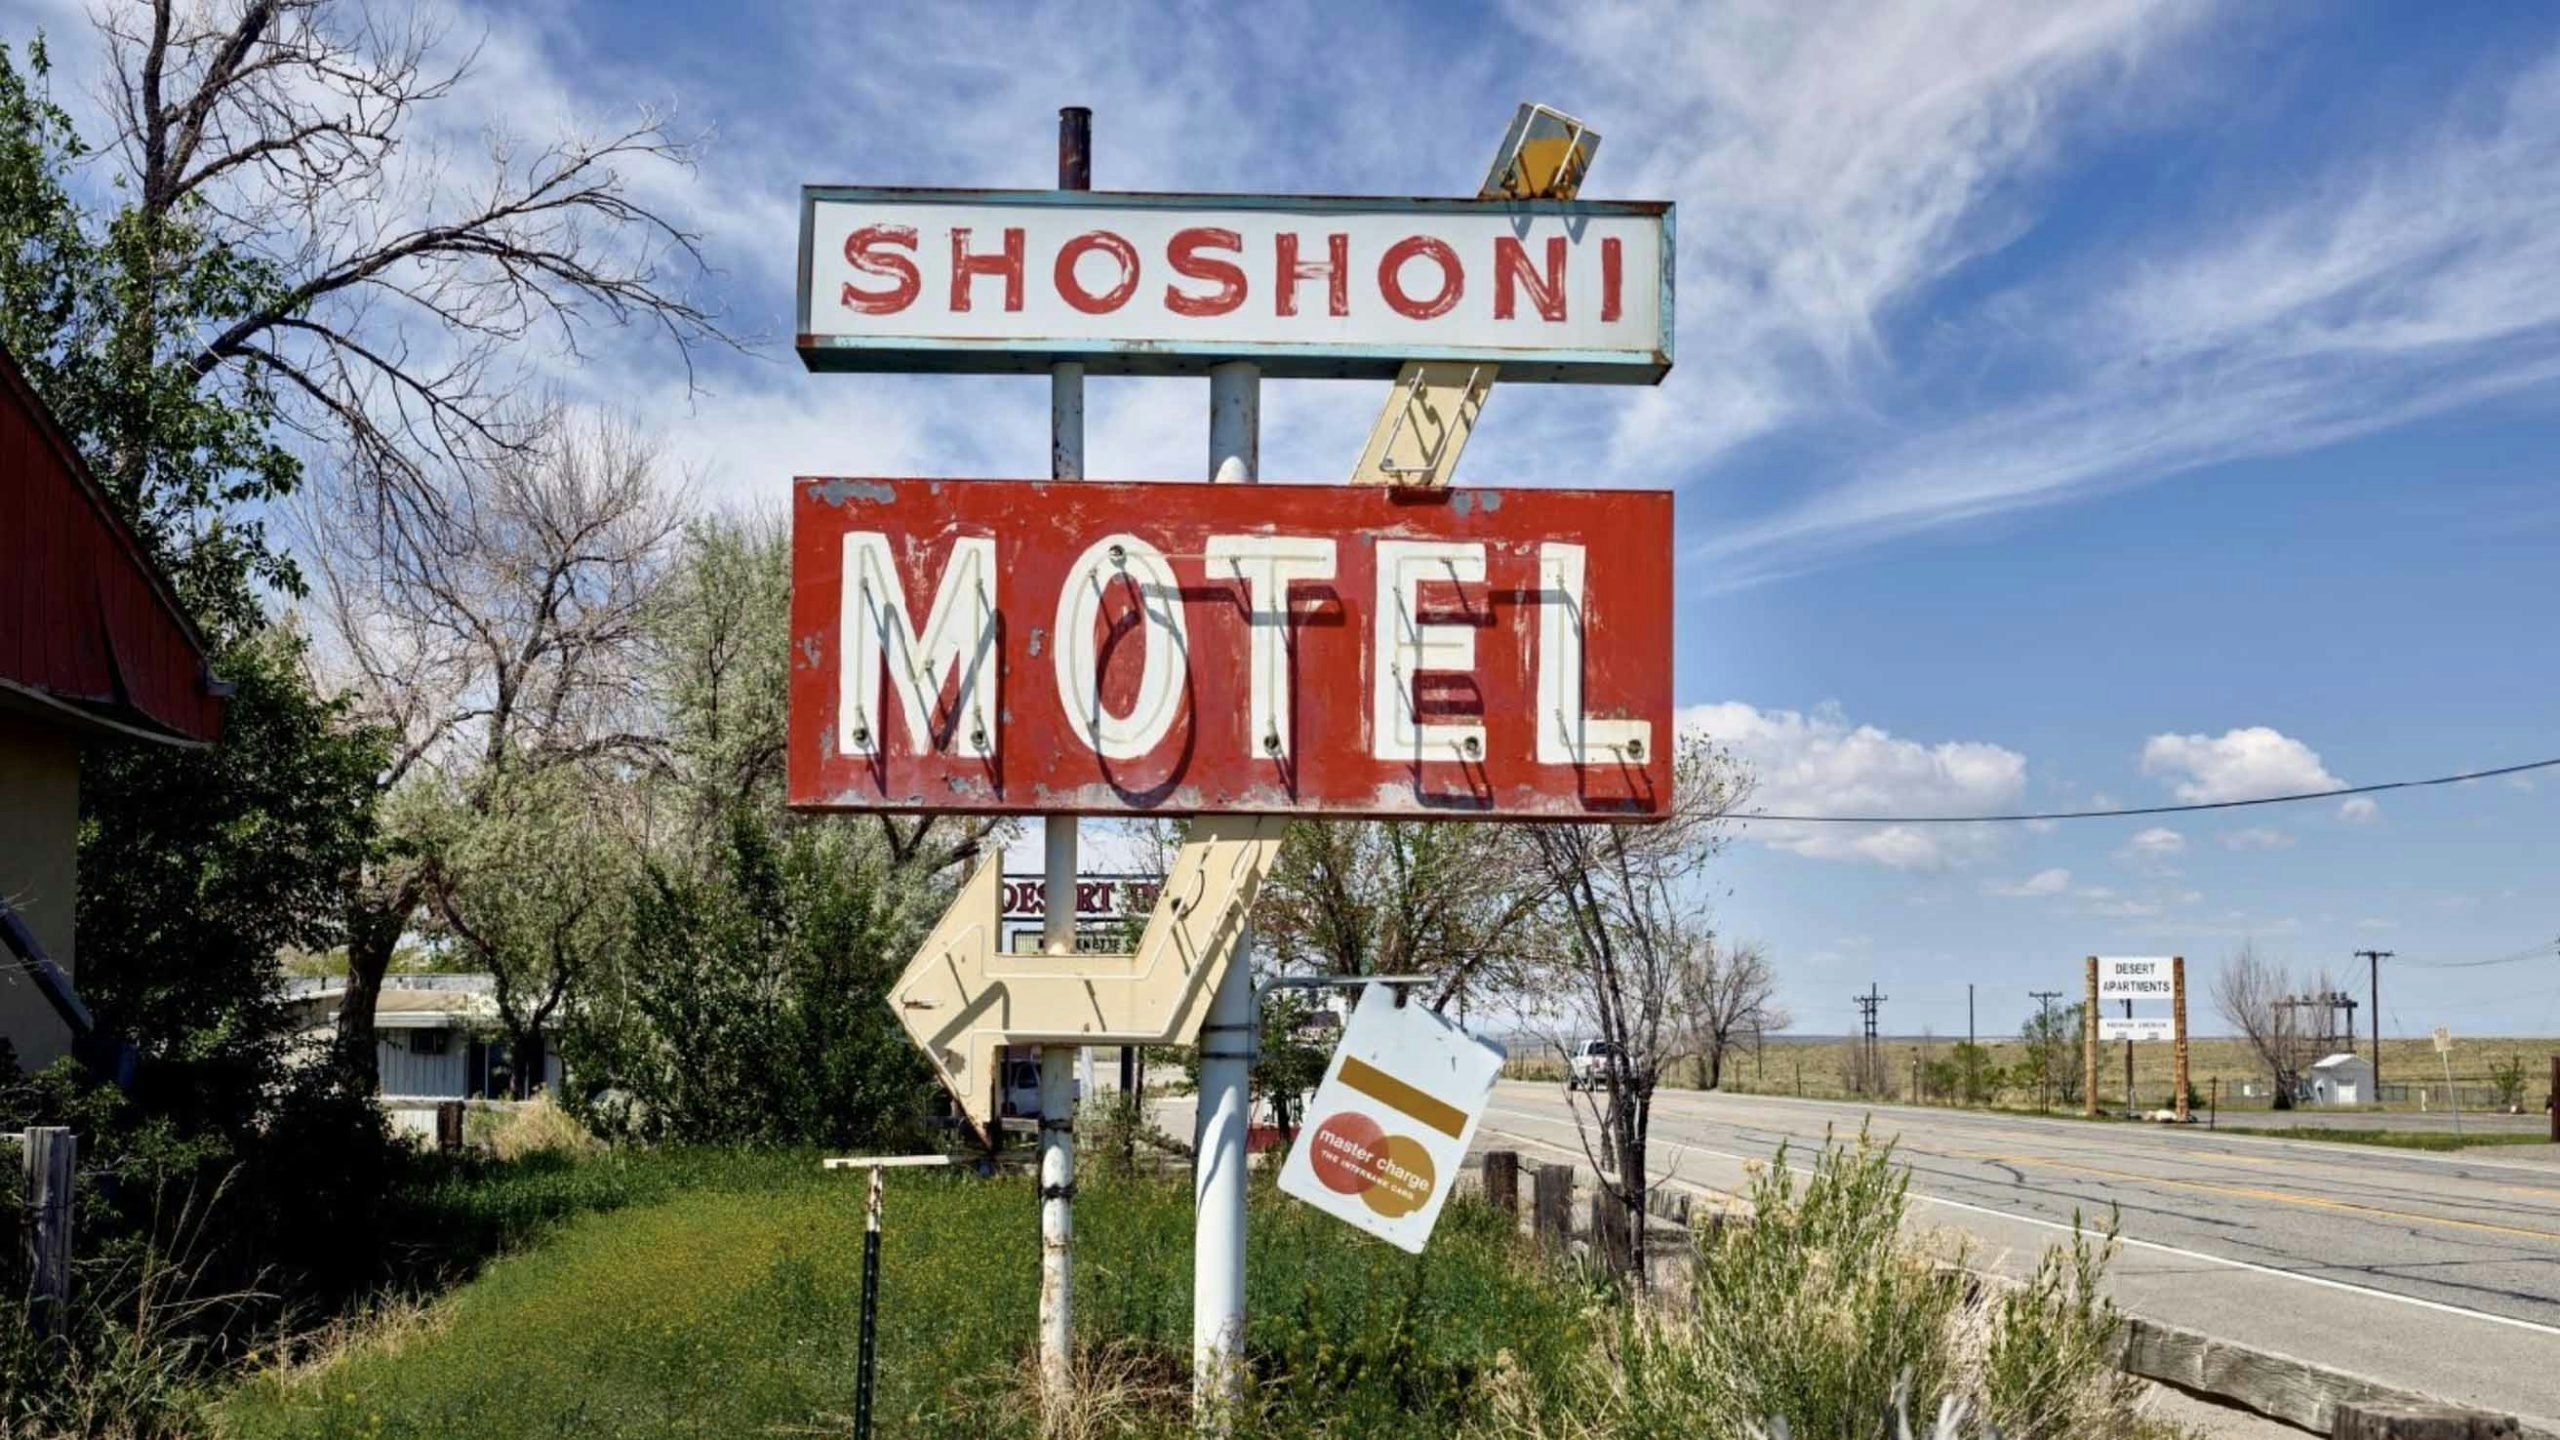 Shoshoni motel sign 5 9 22 scaled